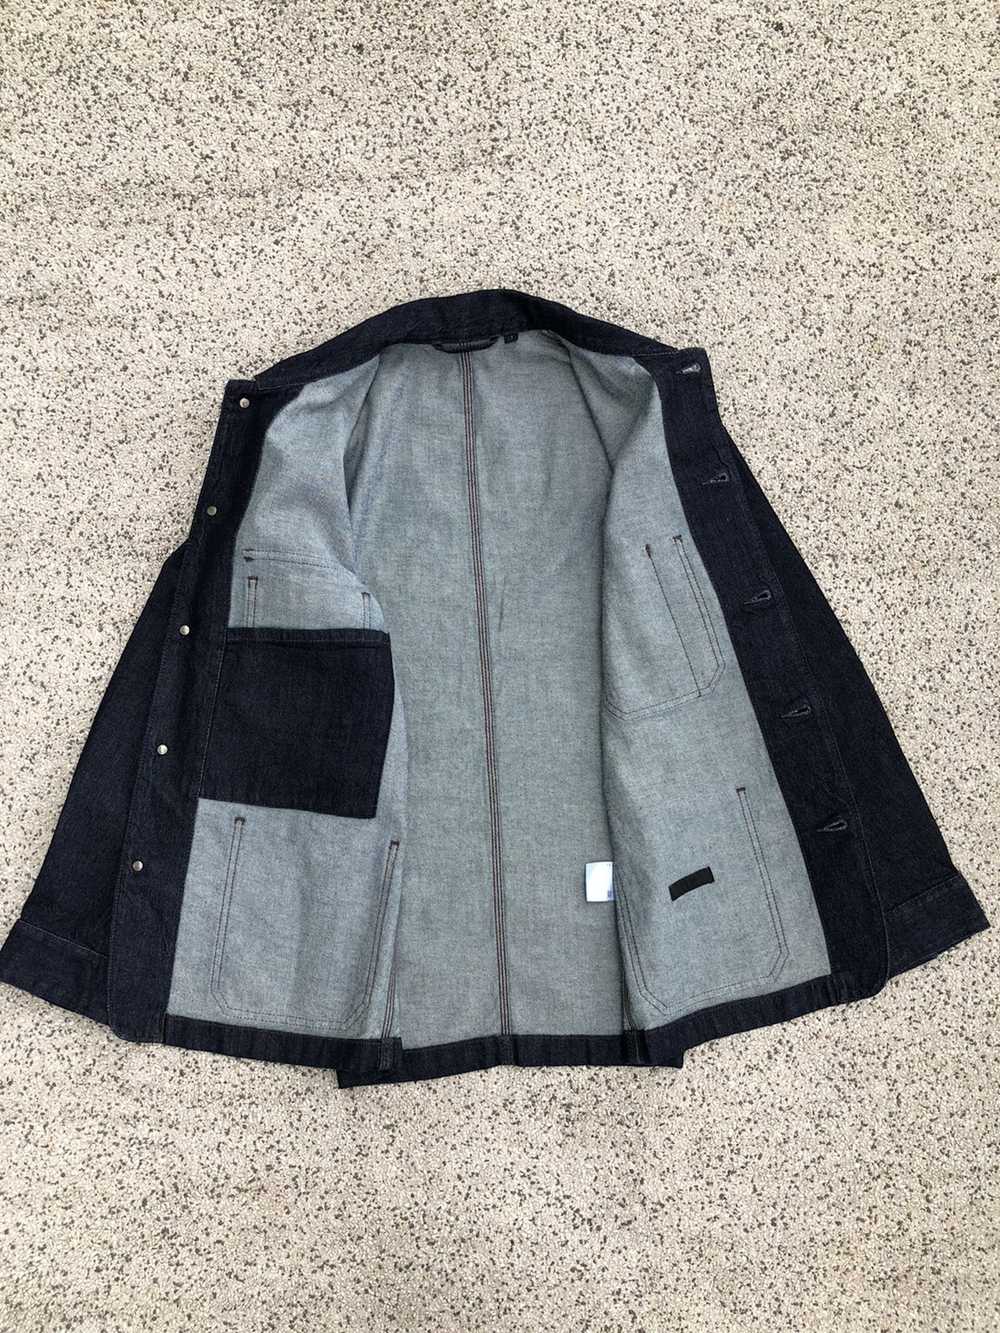 Denim Jacket × Other × Uniqlo Denim Chore Jacket - image 3